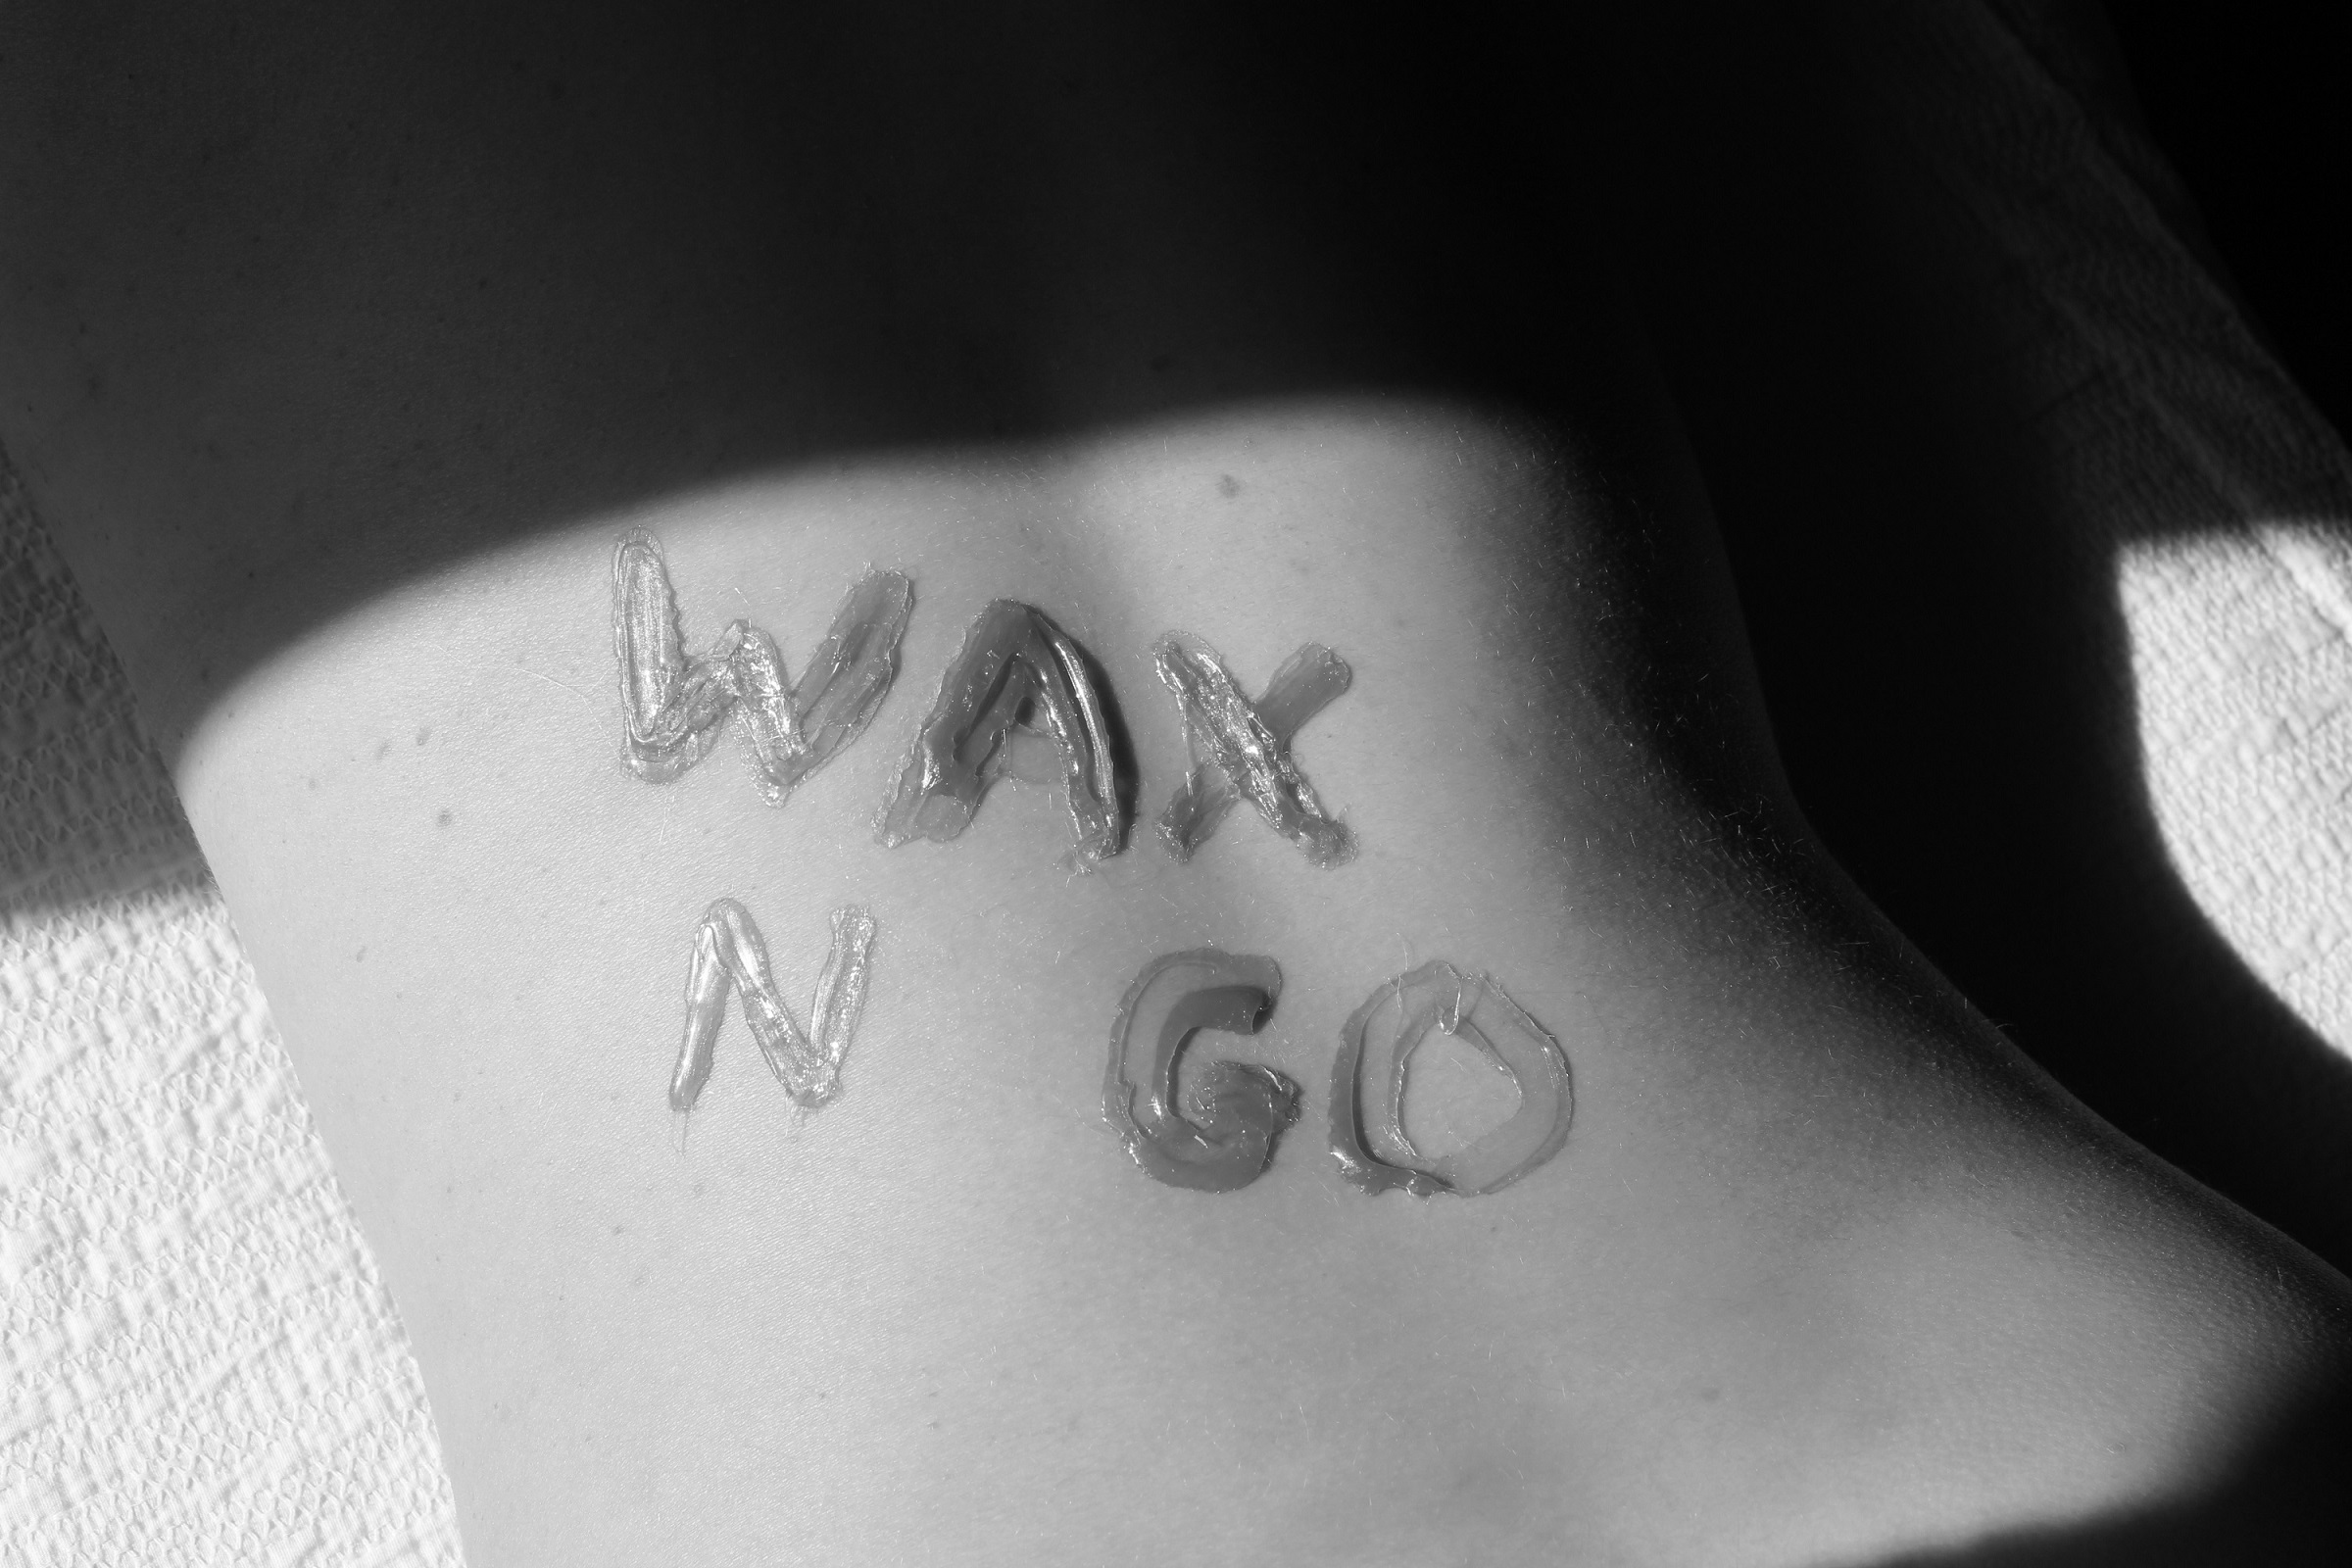 Wax n go - rug